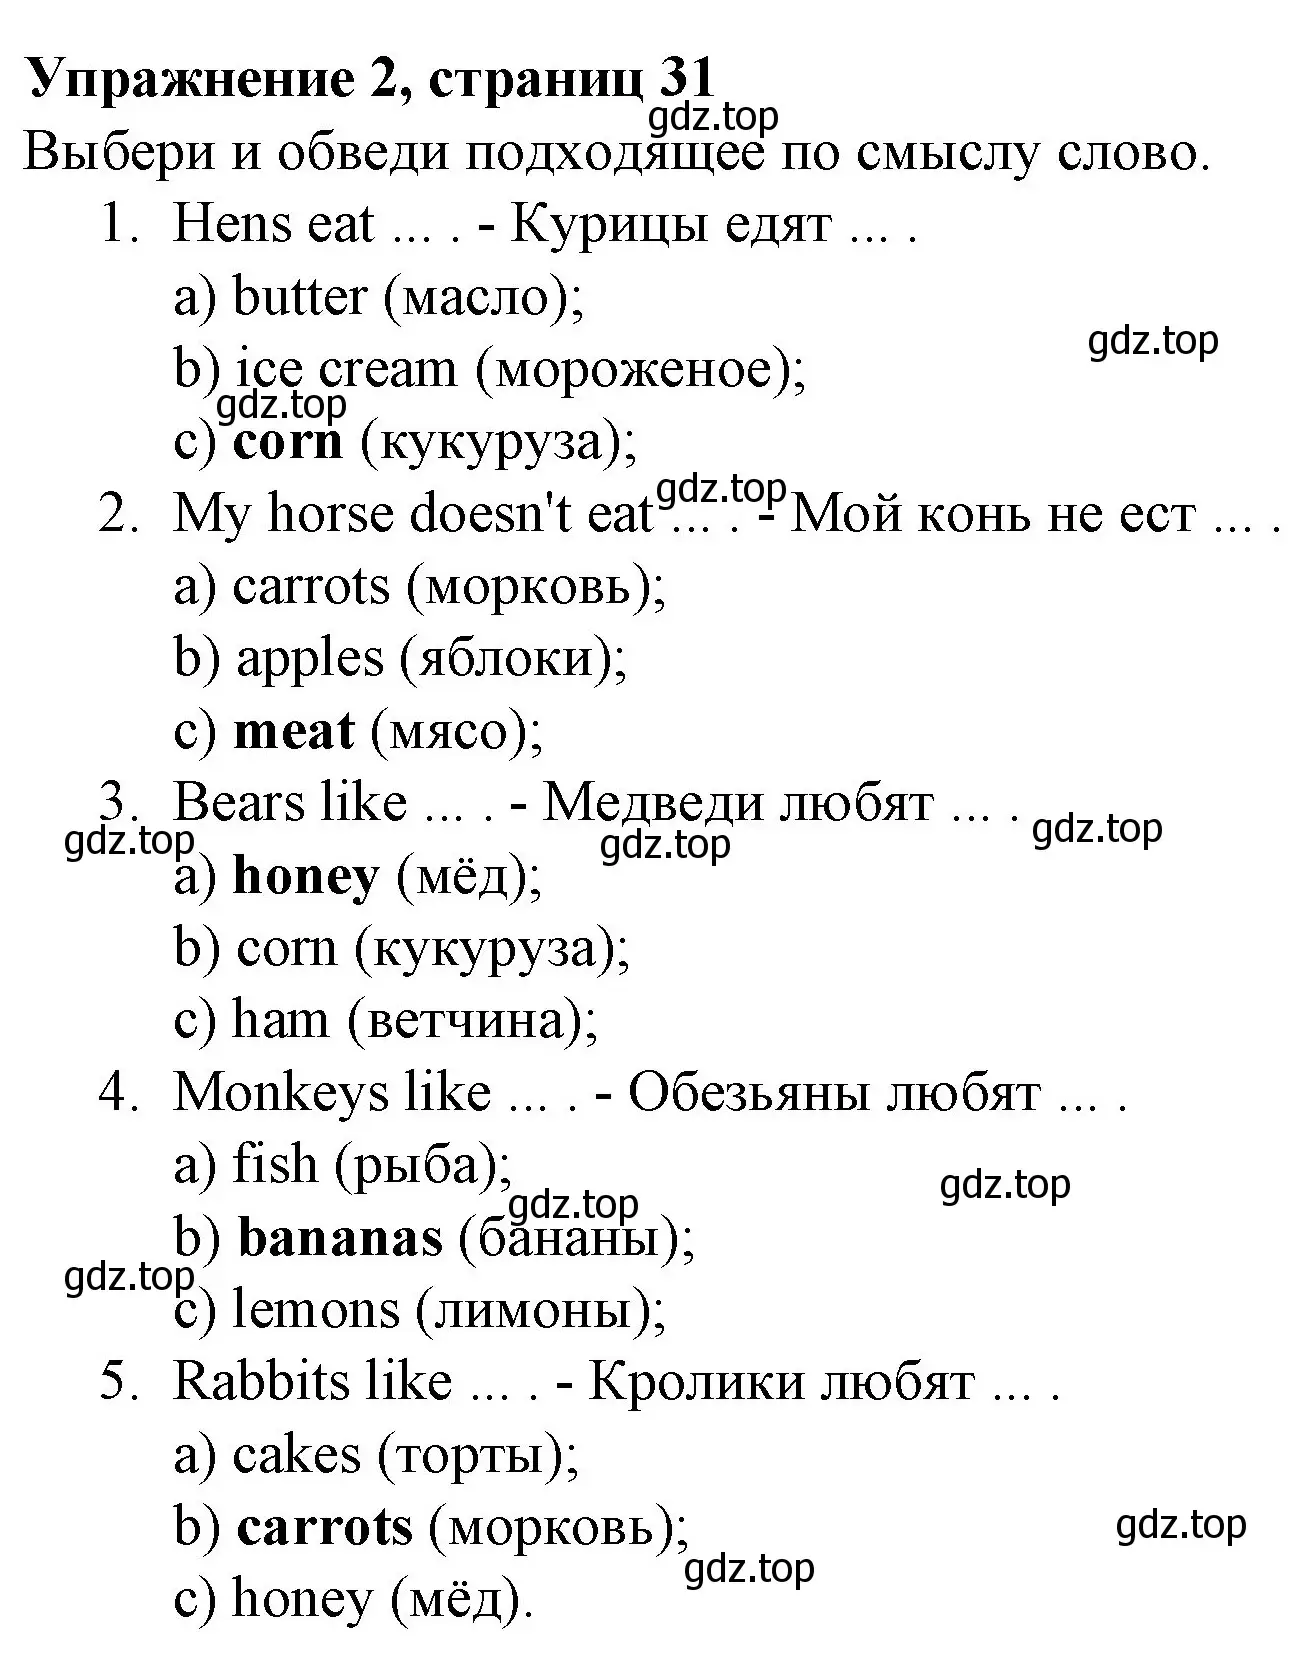 Решение номер 2 (страница 31) гдз по английскому языку 3 класс Биболетова, Денисенко, рабочая тетрадь